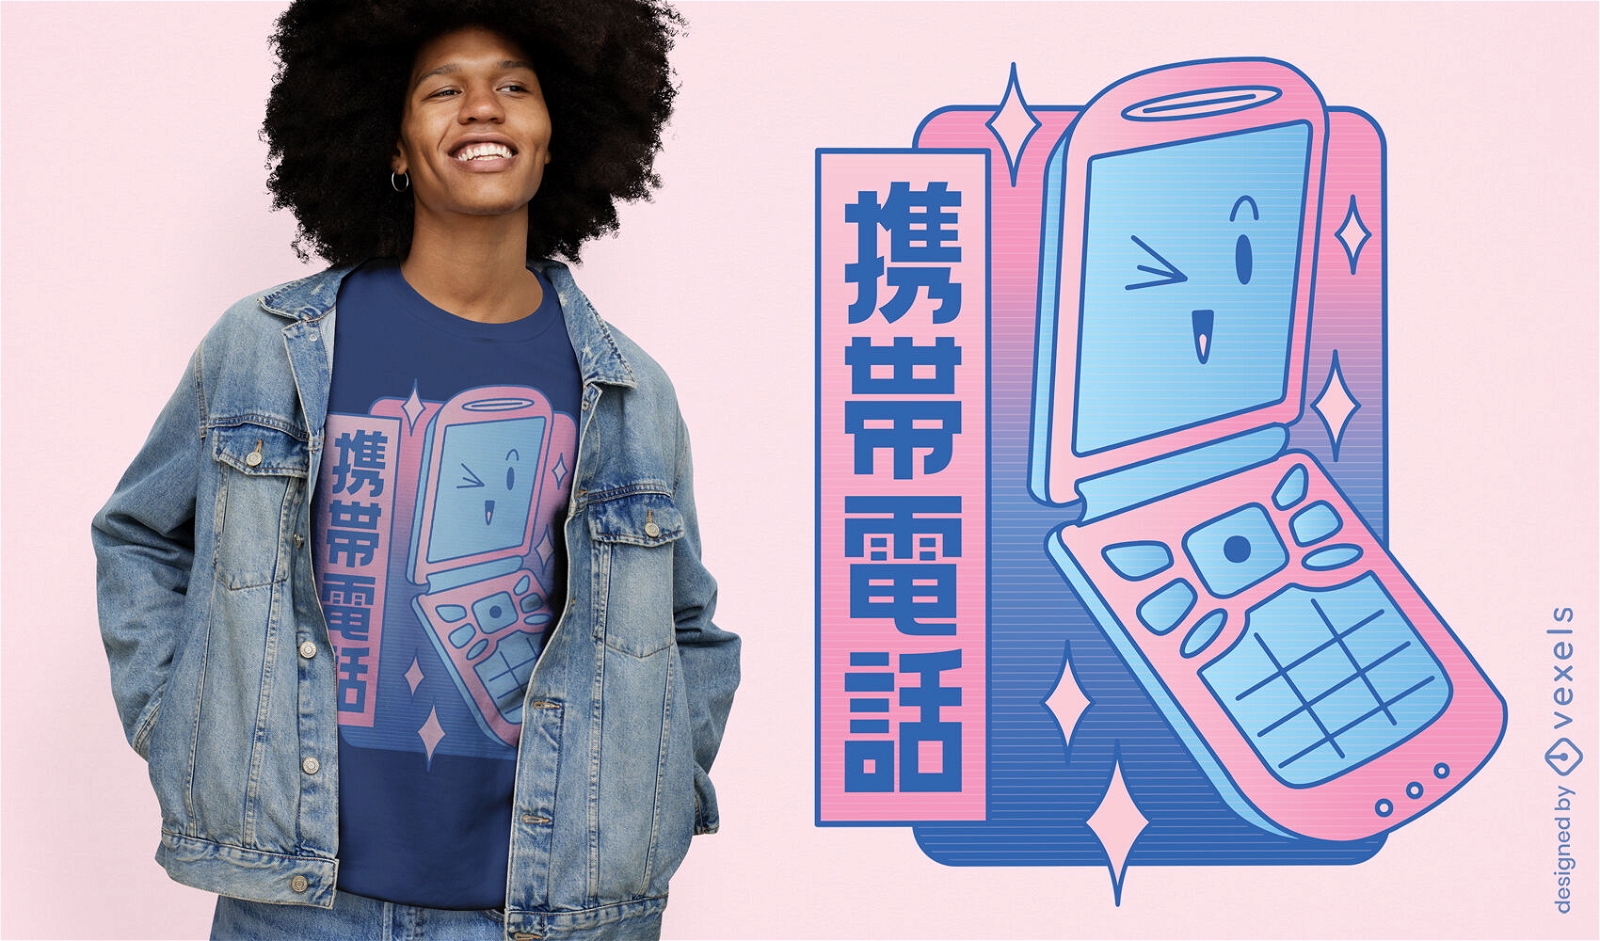 Diseño de camiseta de teléfono retro feliz